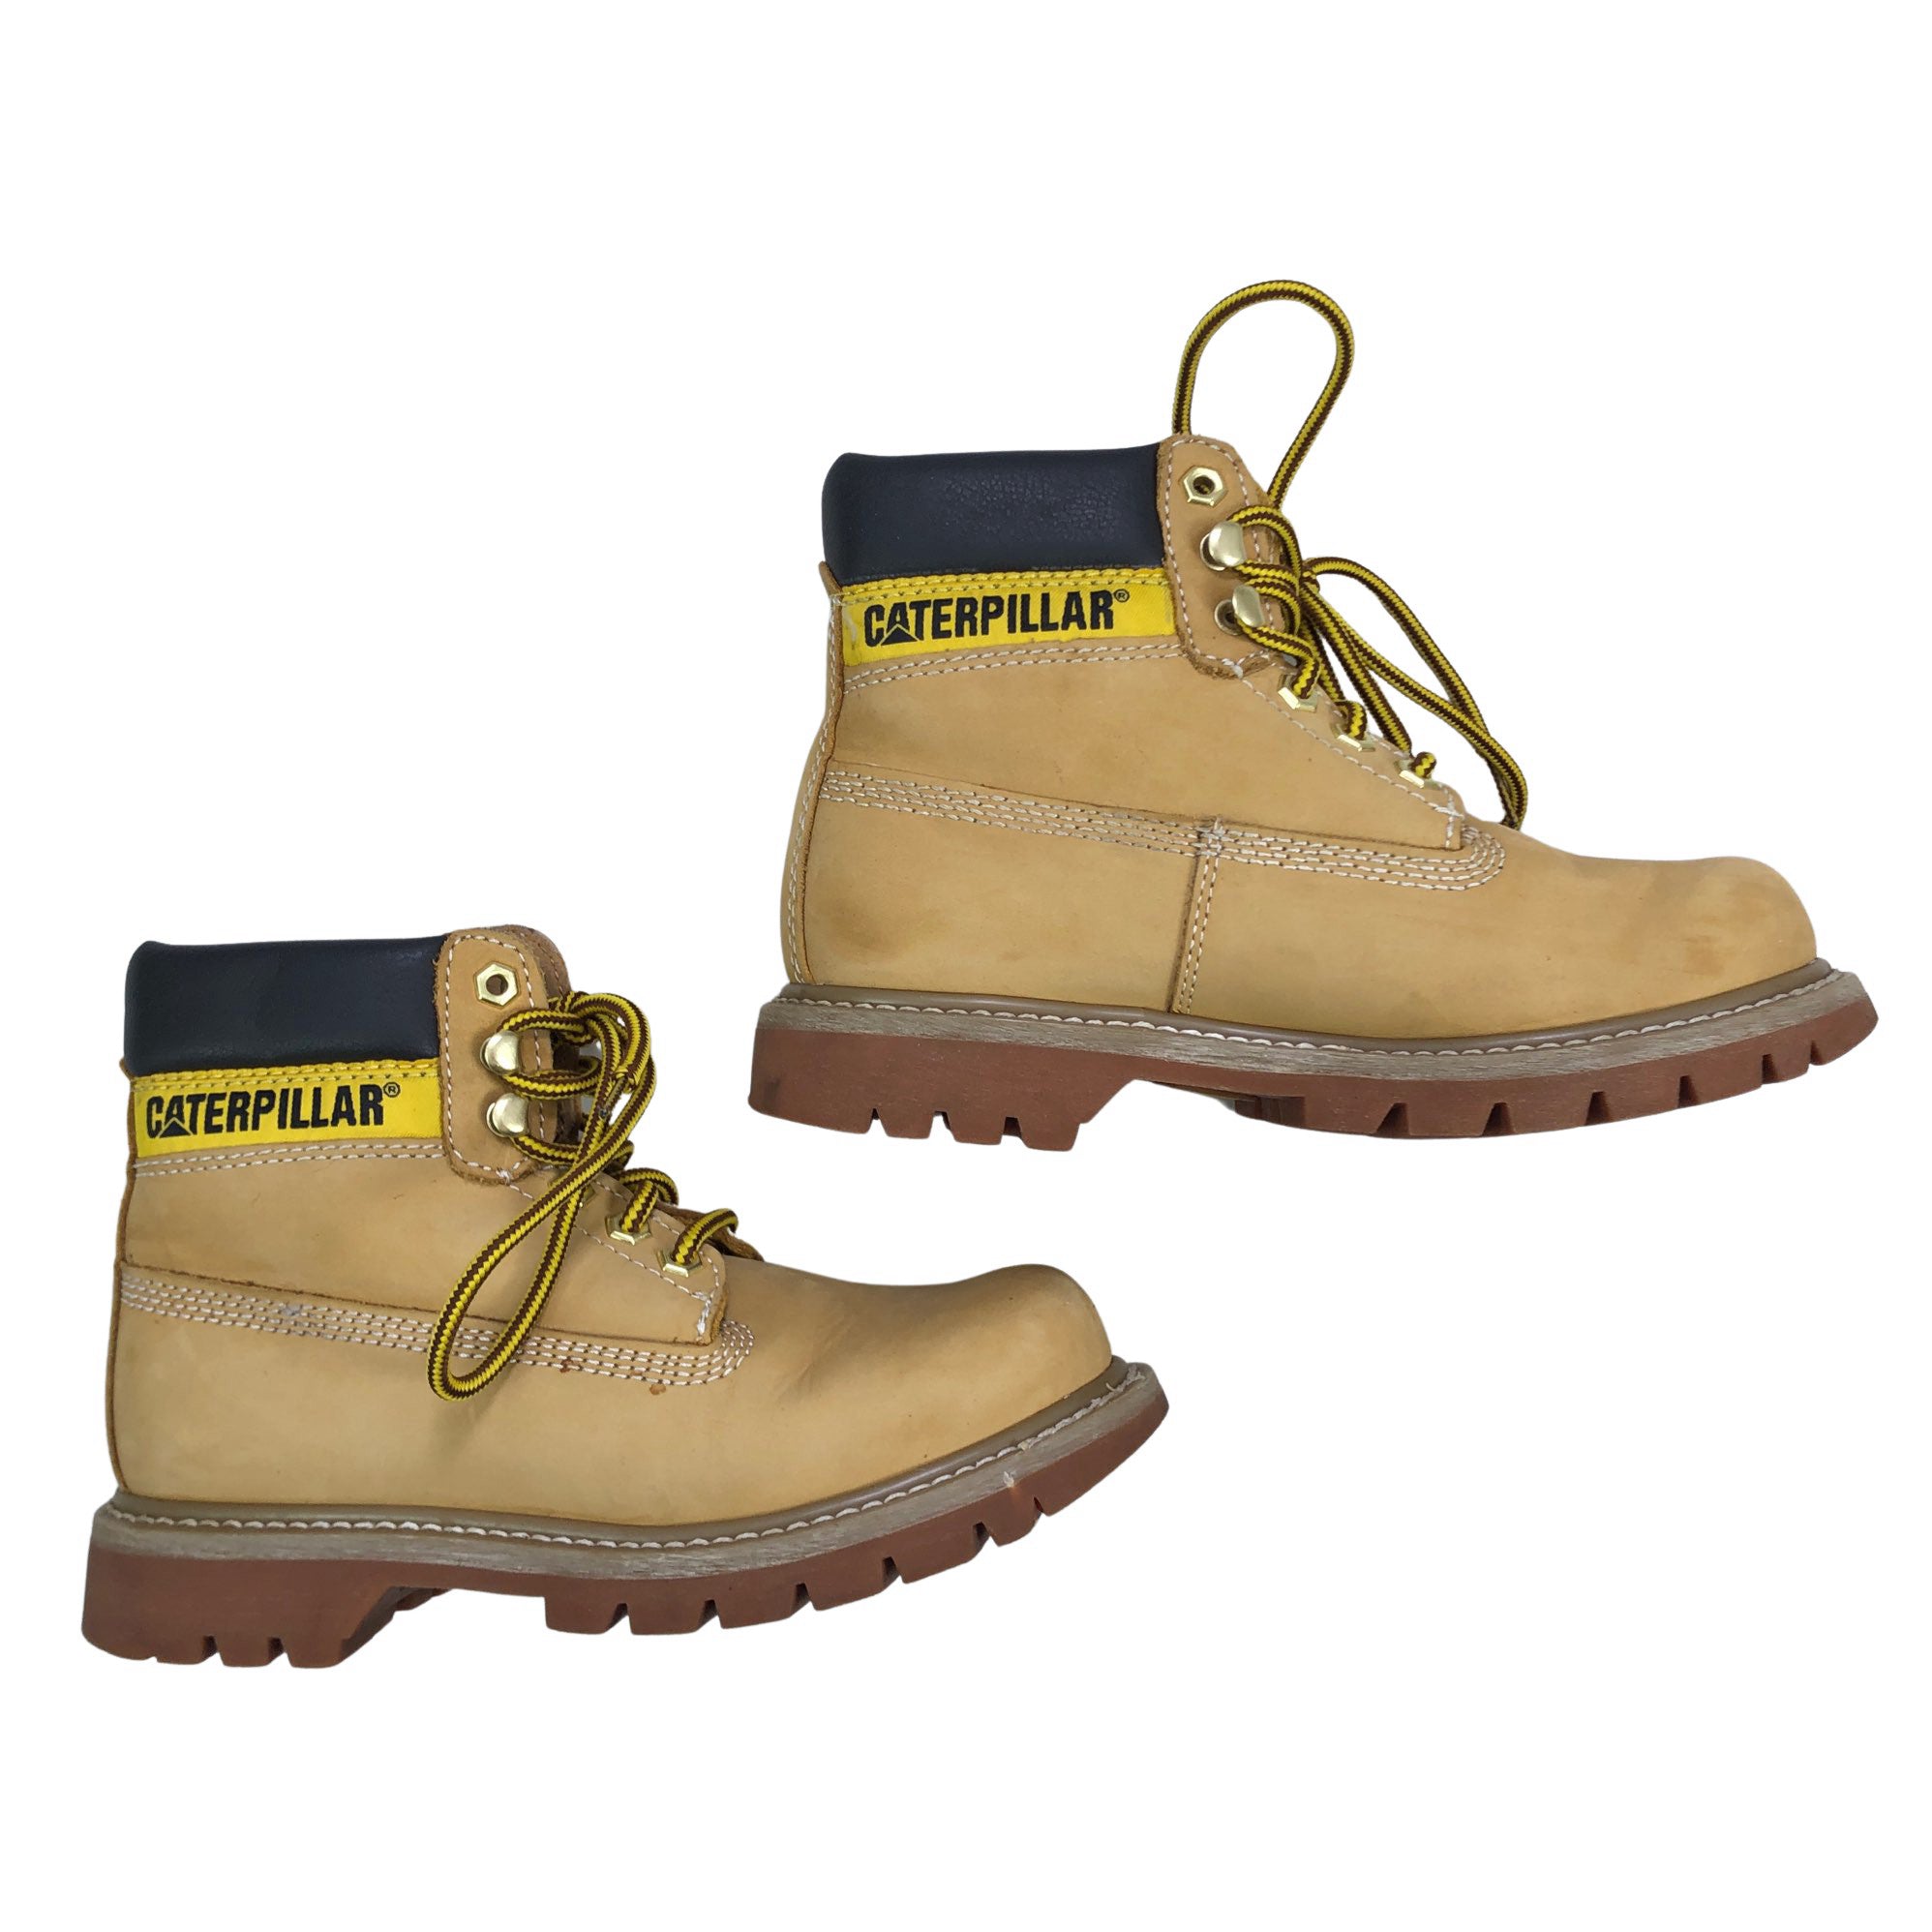 Decoderen matchmaker alleen Unisex Caterpillar Ankle boots, size 37 (Beige) | Emmy